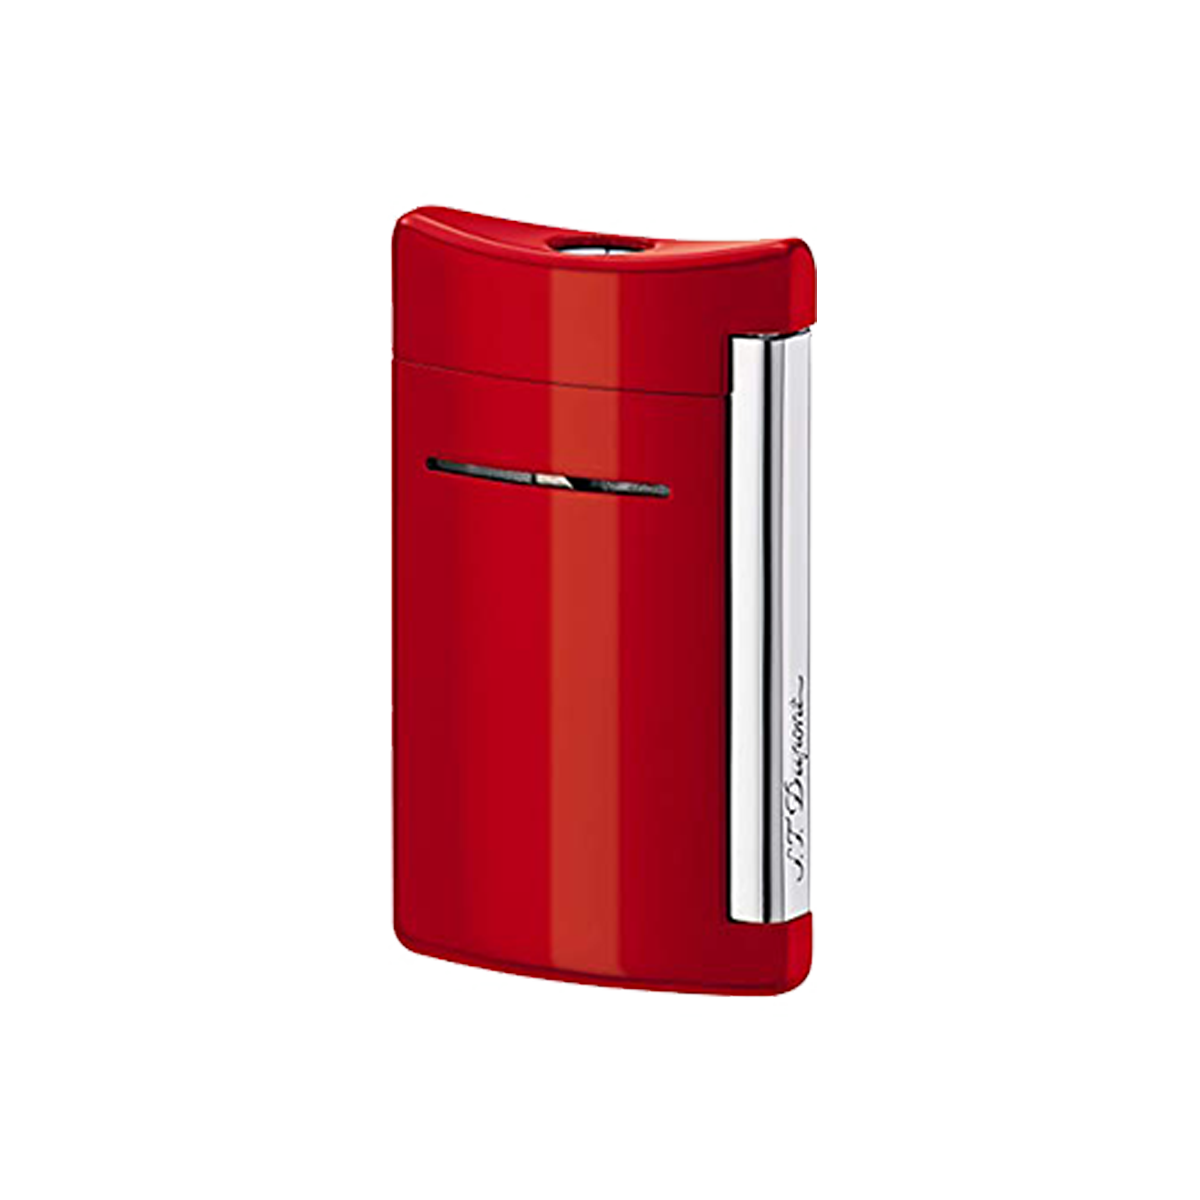 Зажигалка Minijet 10029 Цвет Красный Отделка натуральным лаком и хромом | S.T. Dupont